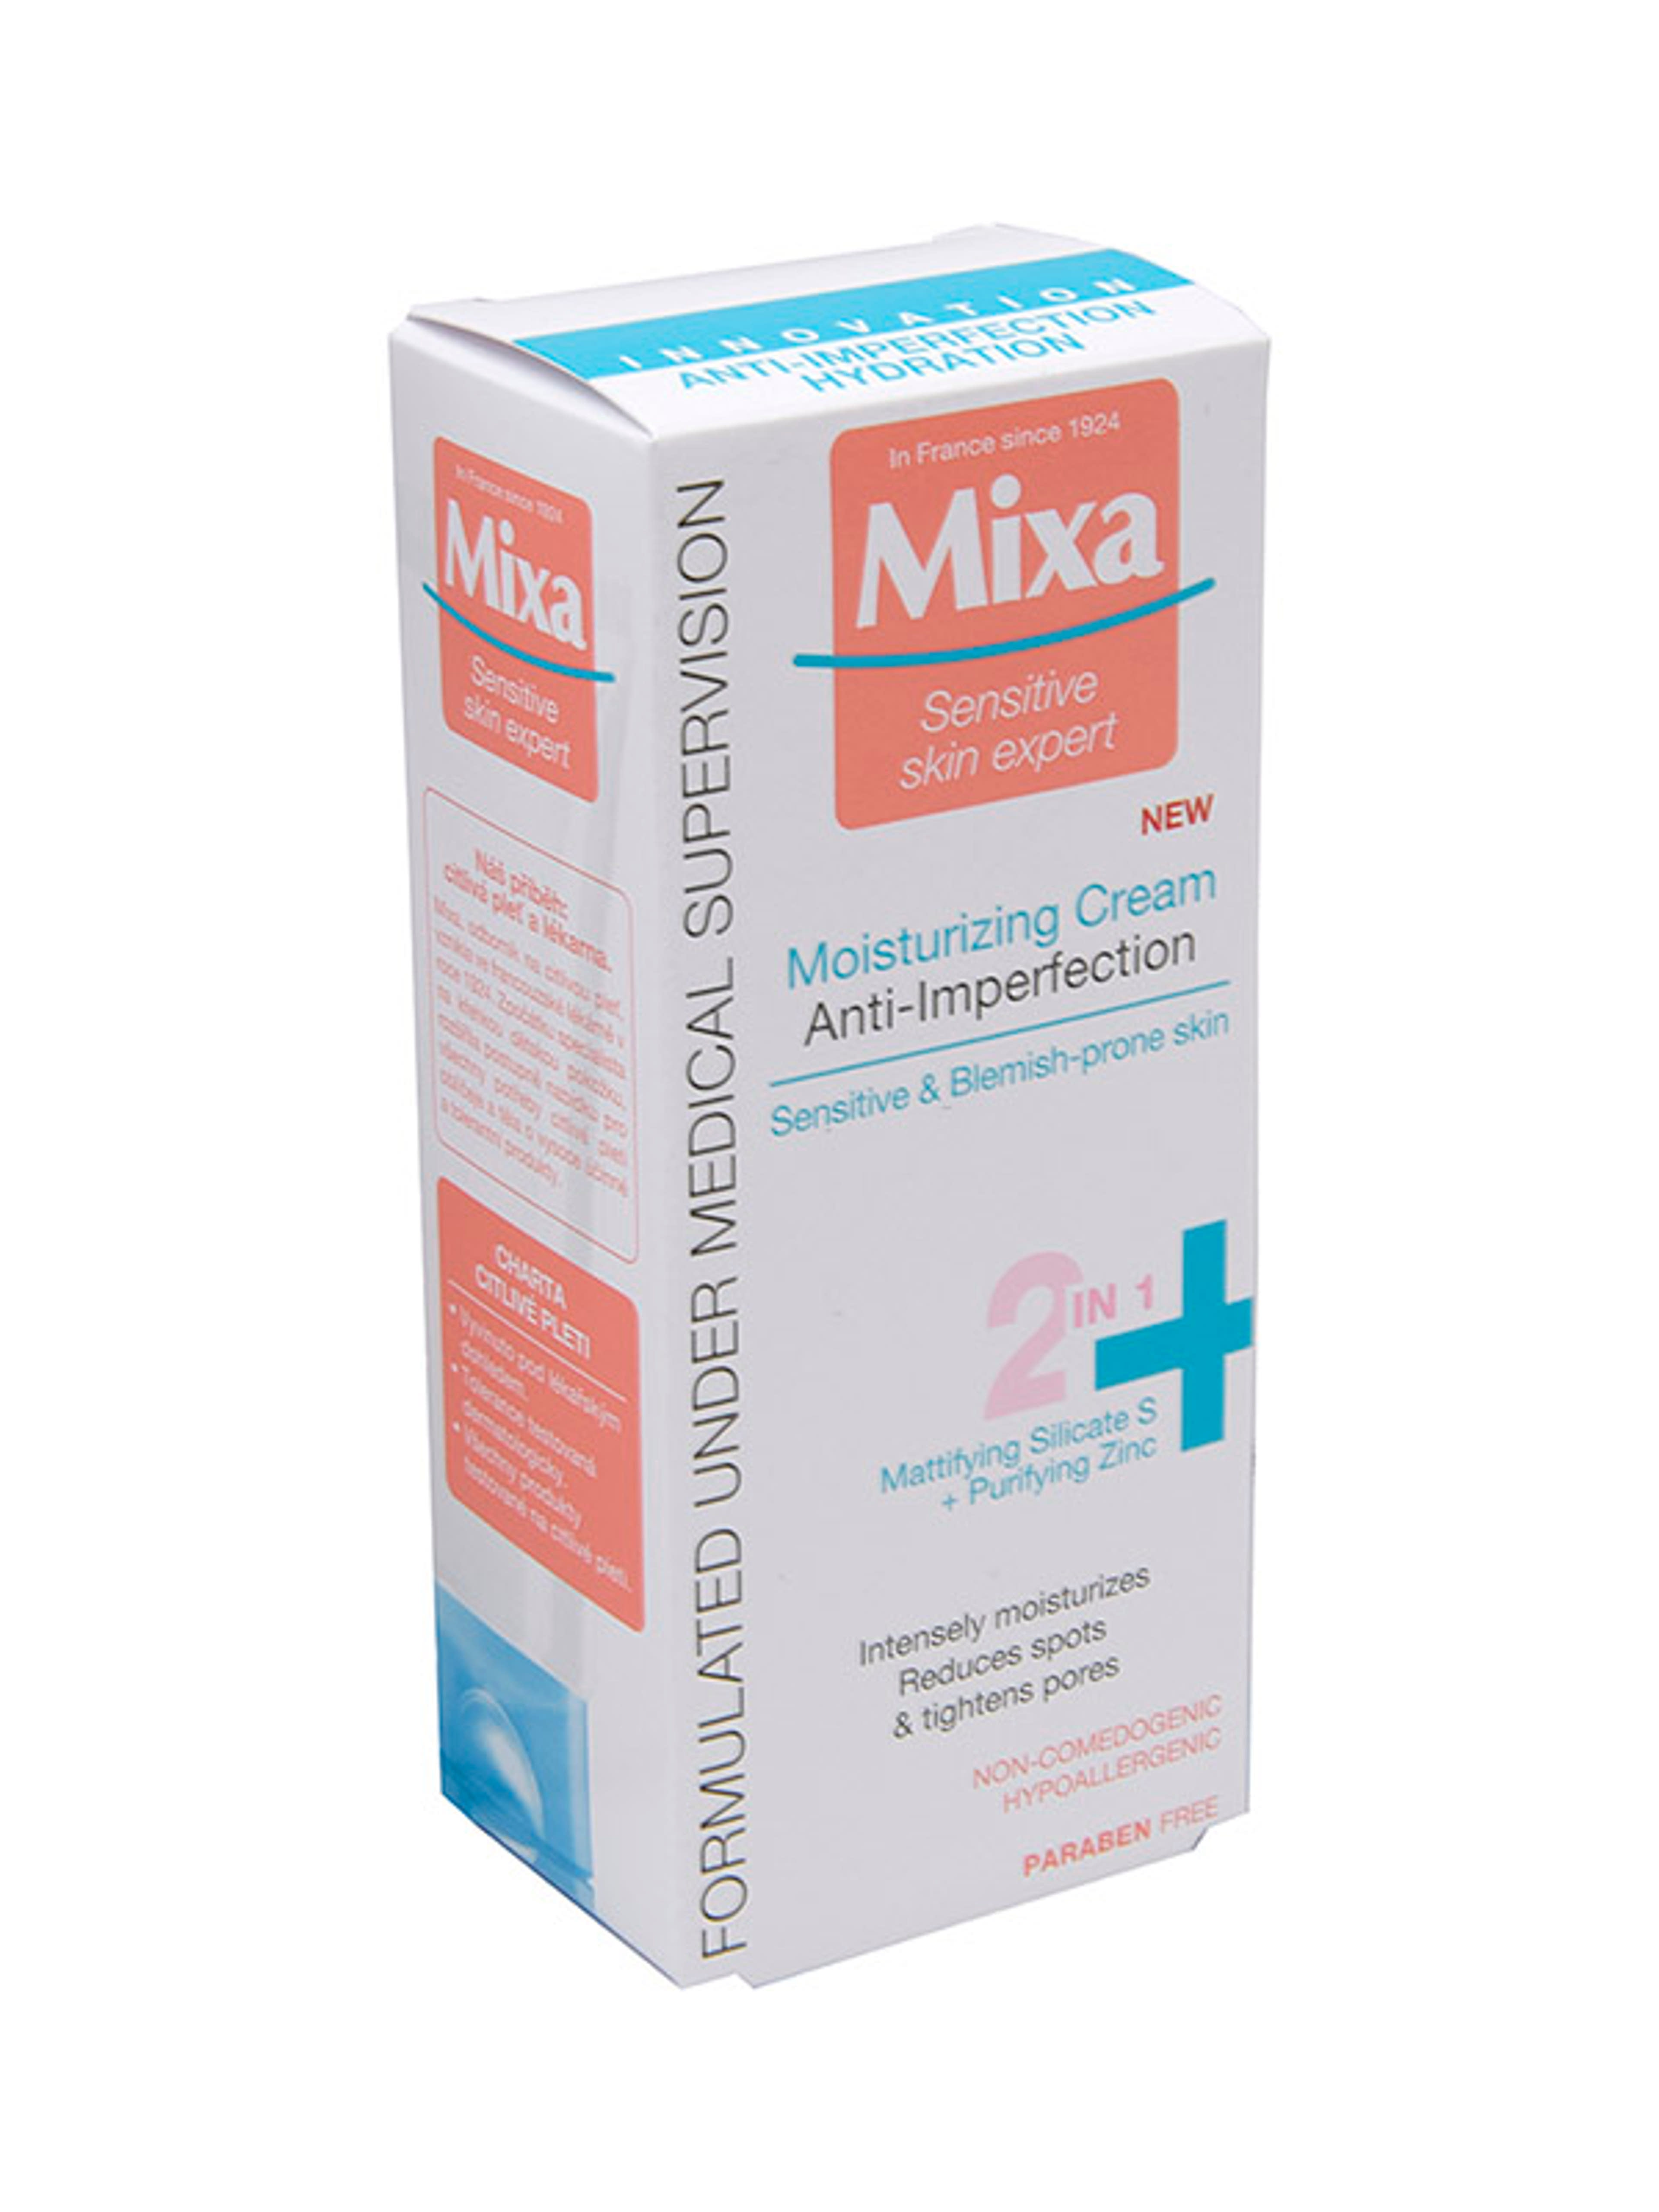 Mixa Anti-Imperfection hidratáló krém 2in1 bőrhibákra hajlamos bőrre - 50 ml